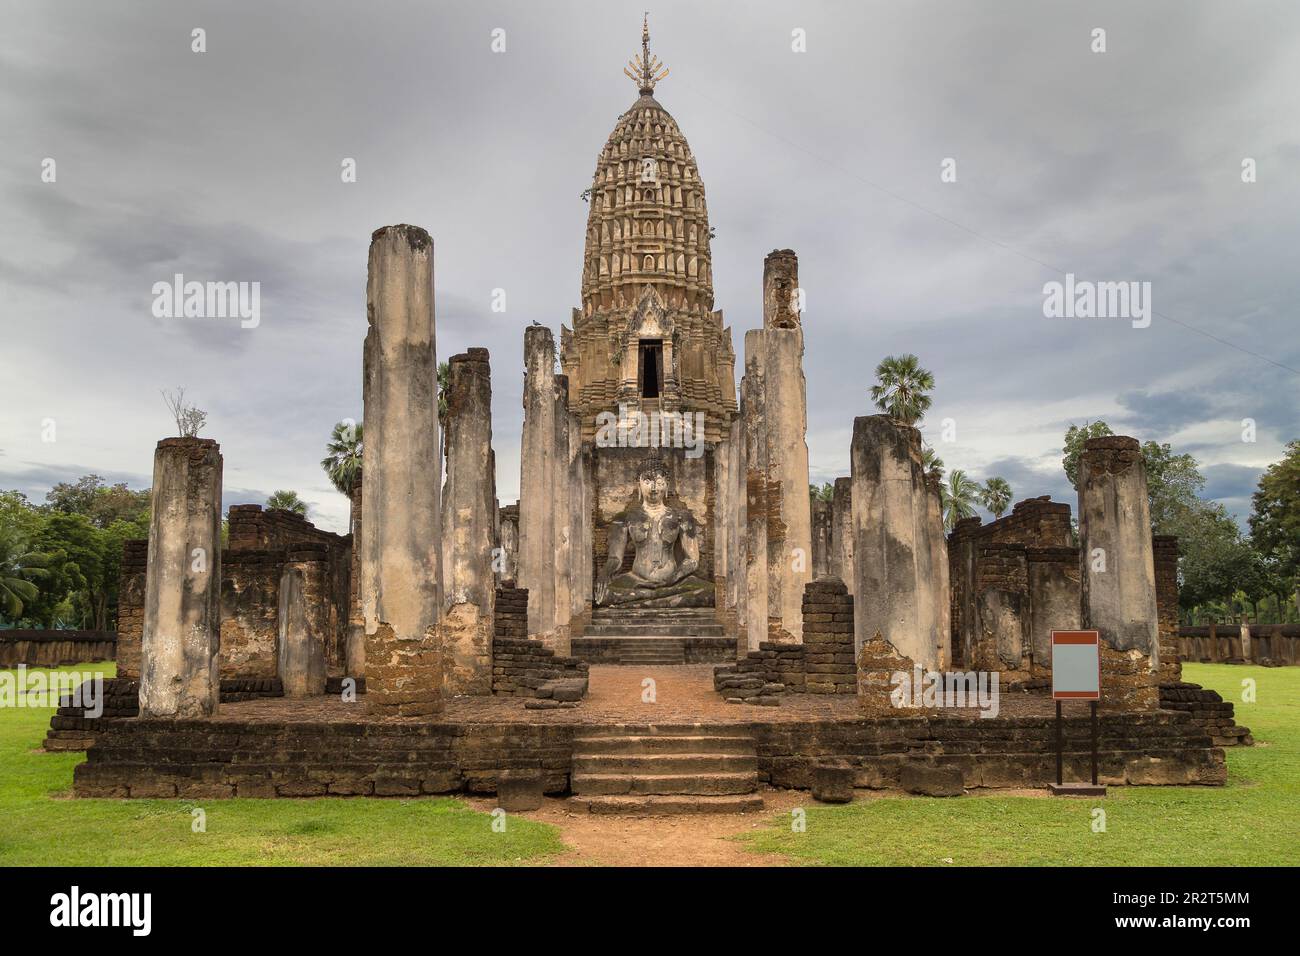 Prang of Wat Phra Si Rattana Mahathat in Si Satchanalai, Thailand. Stock Photo